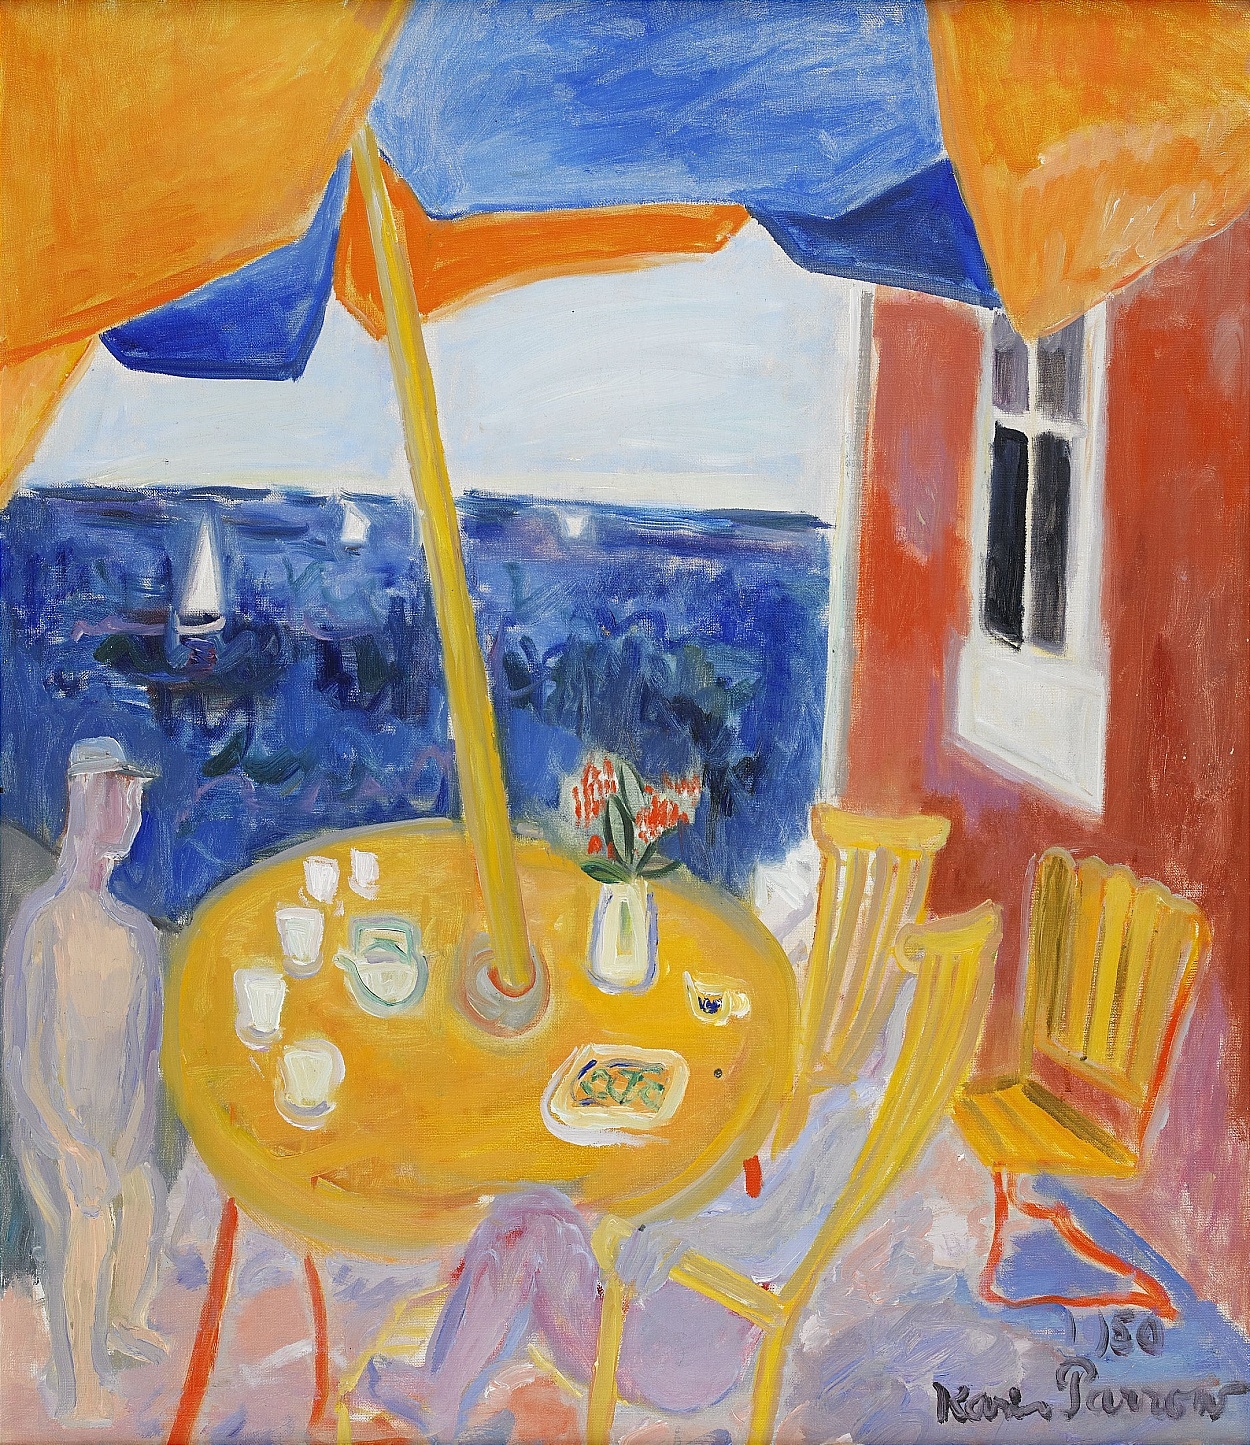 Vid Trädgårdsbordet by Karin Parrow, 1950